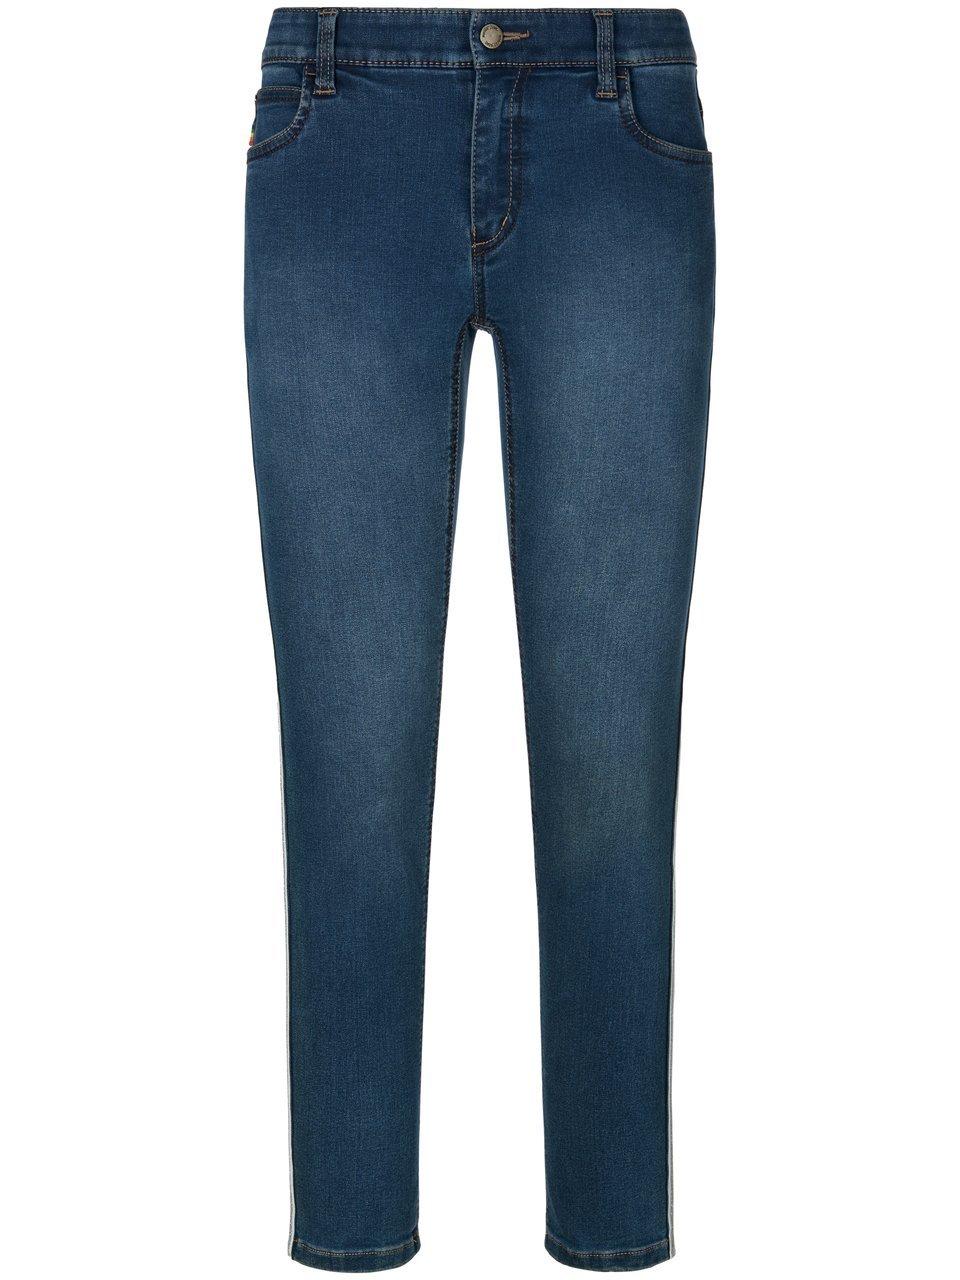 Enkellange skinny jeans glitters Van Wonderjeans denim